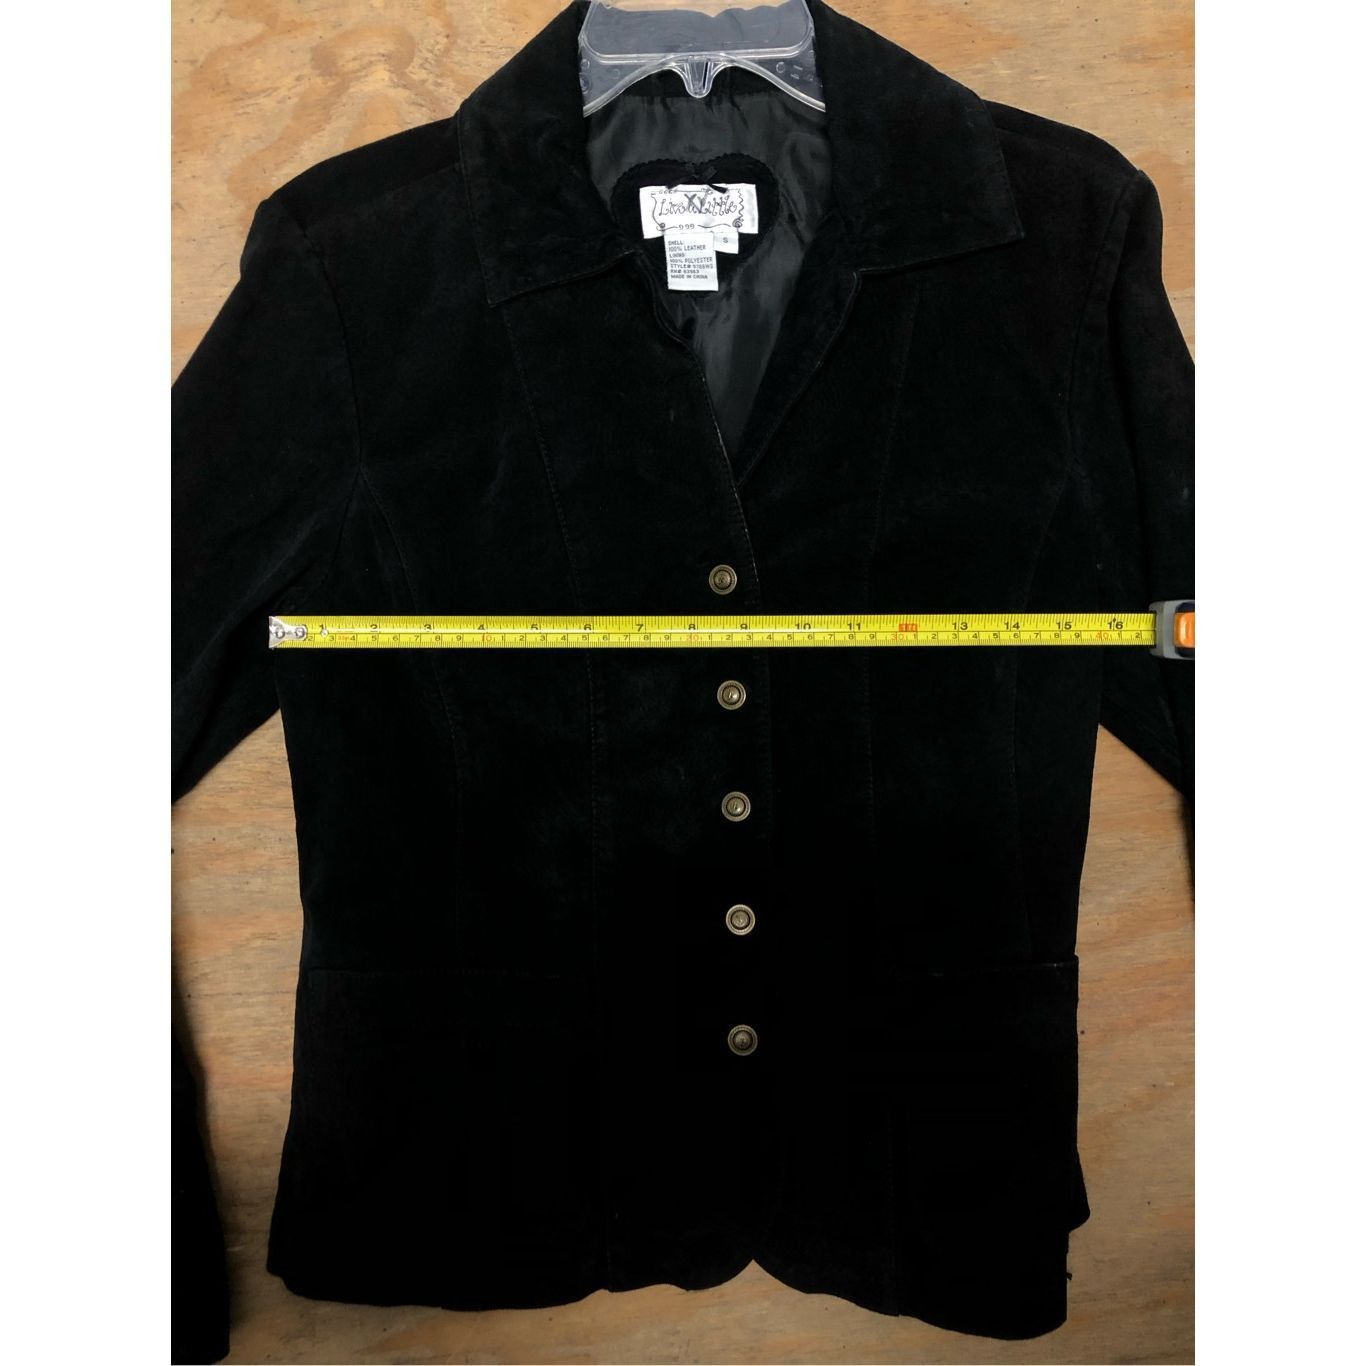 A-Line Live a Little Black 100% Leather Button Jacket Women's Size Size S / US 4 / IT 40 - 6 Thumbnail